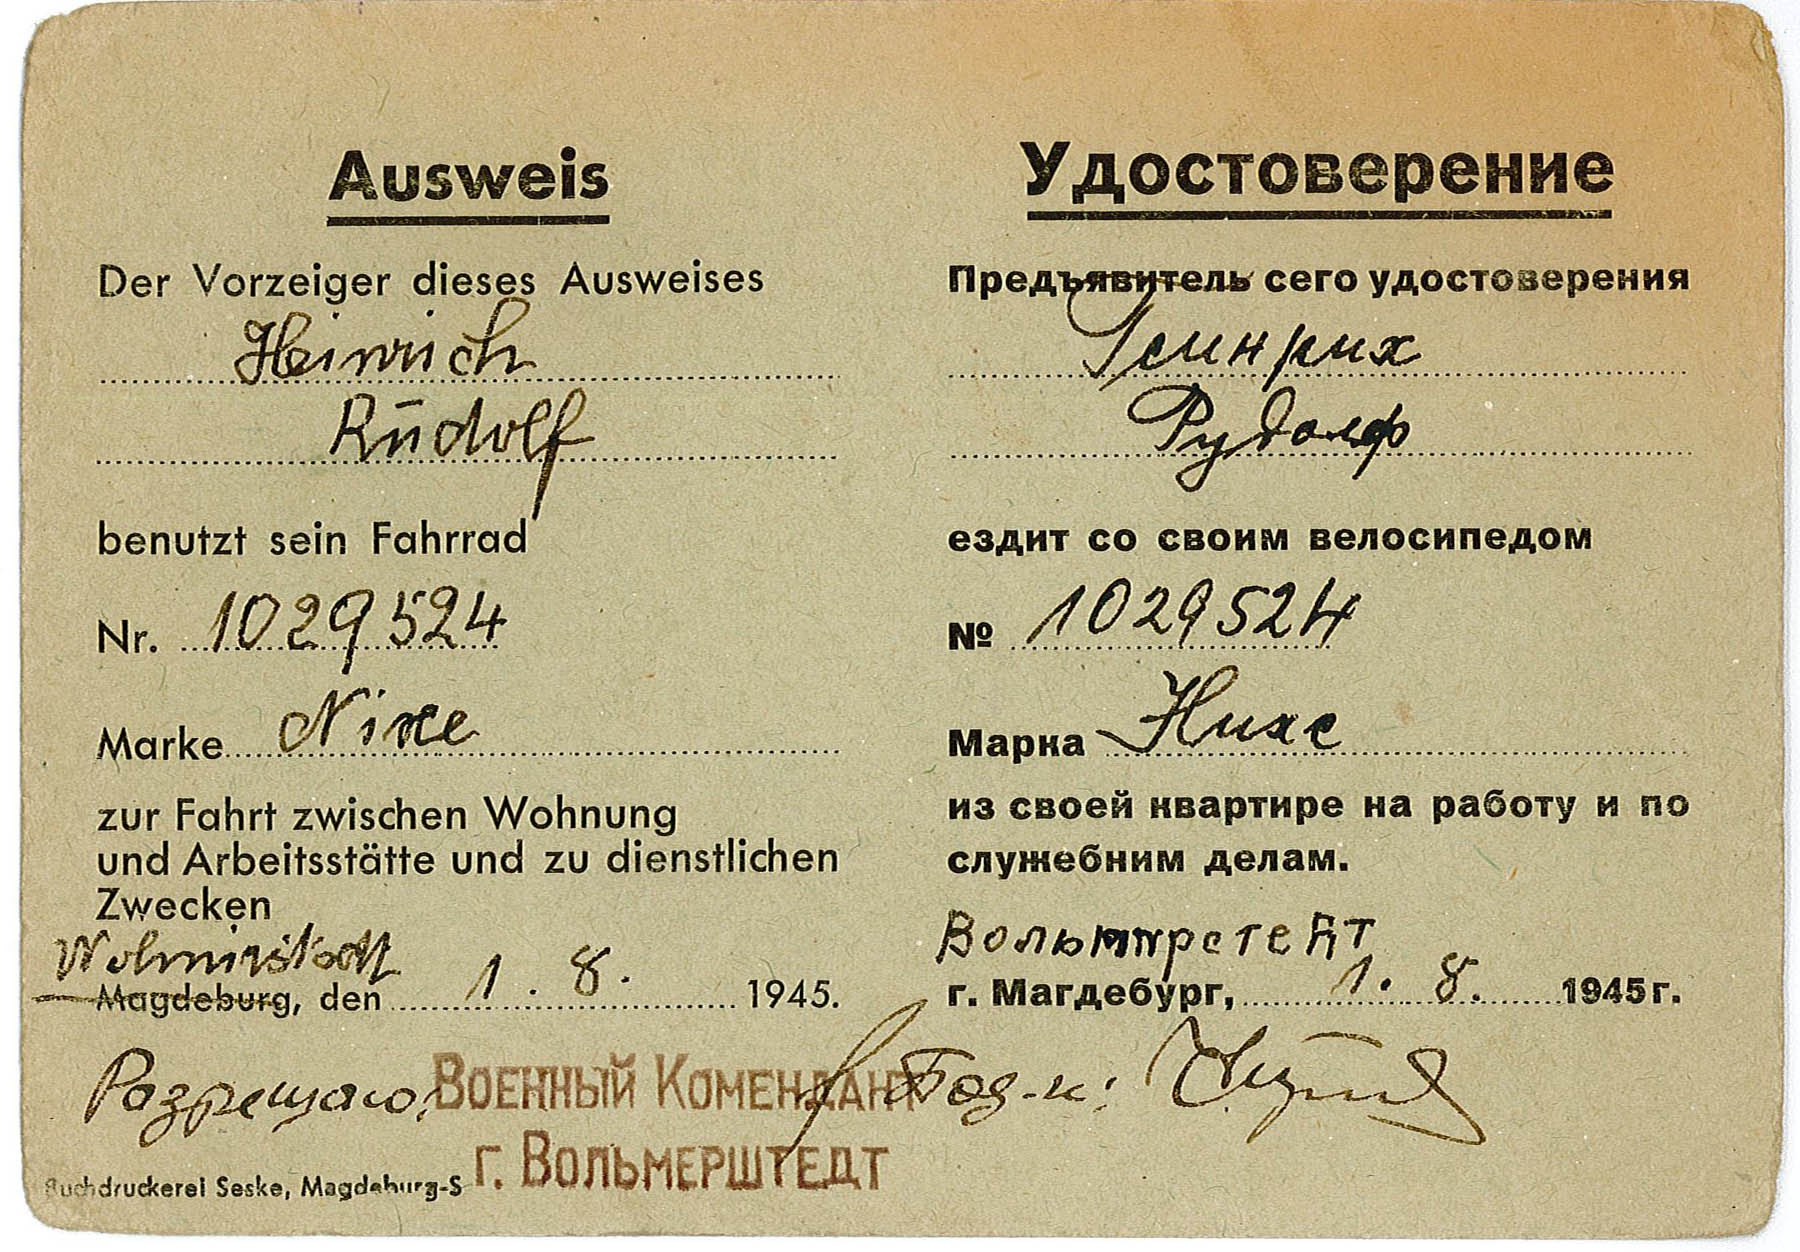 Ausweis von Rudolph Heinrich zur Nutzung eines Fahrrades, 01.08.1945 (Museum Wolmirstedt RR-F)